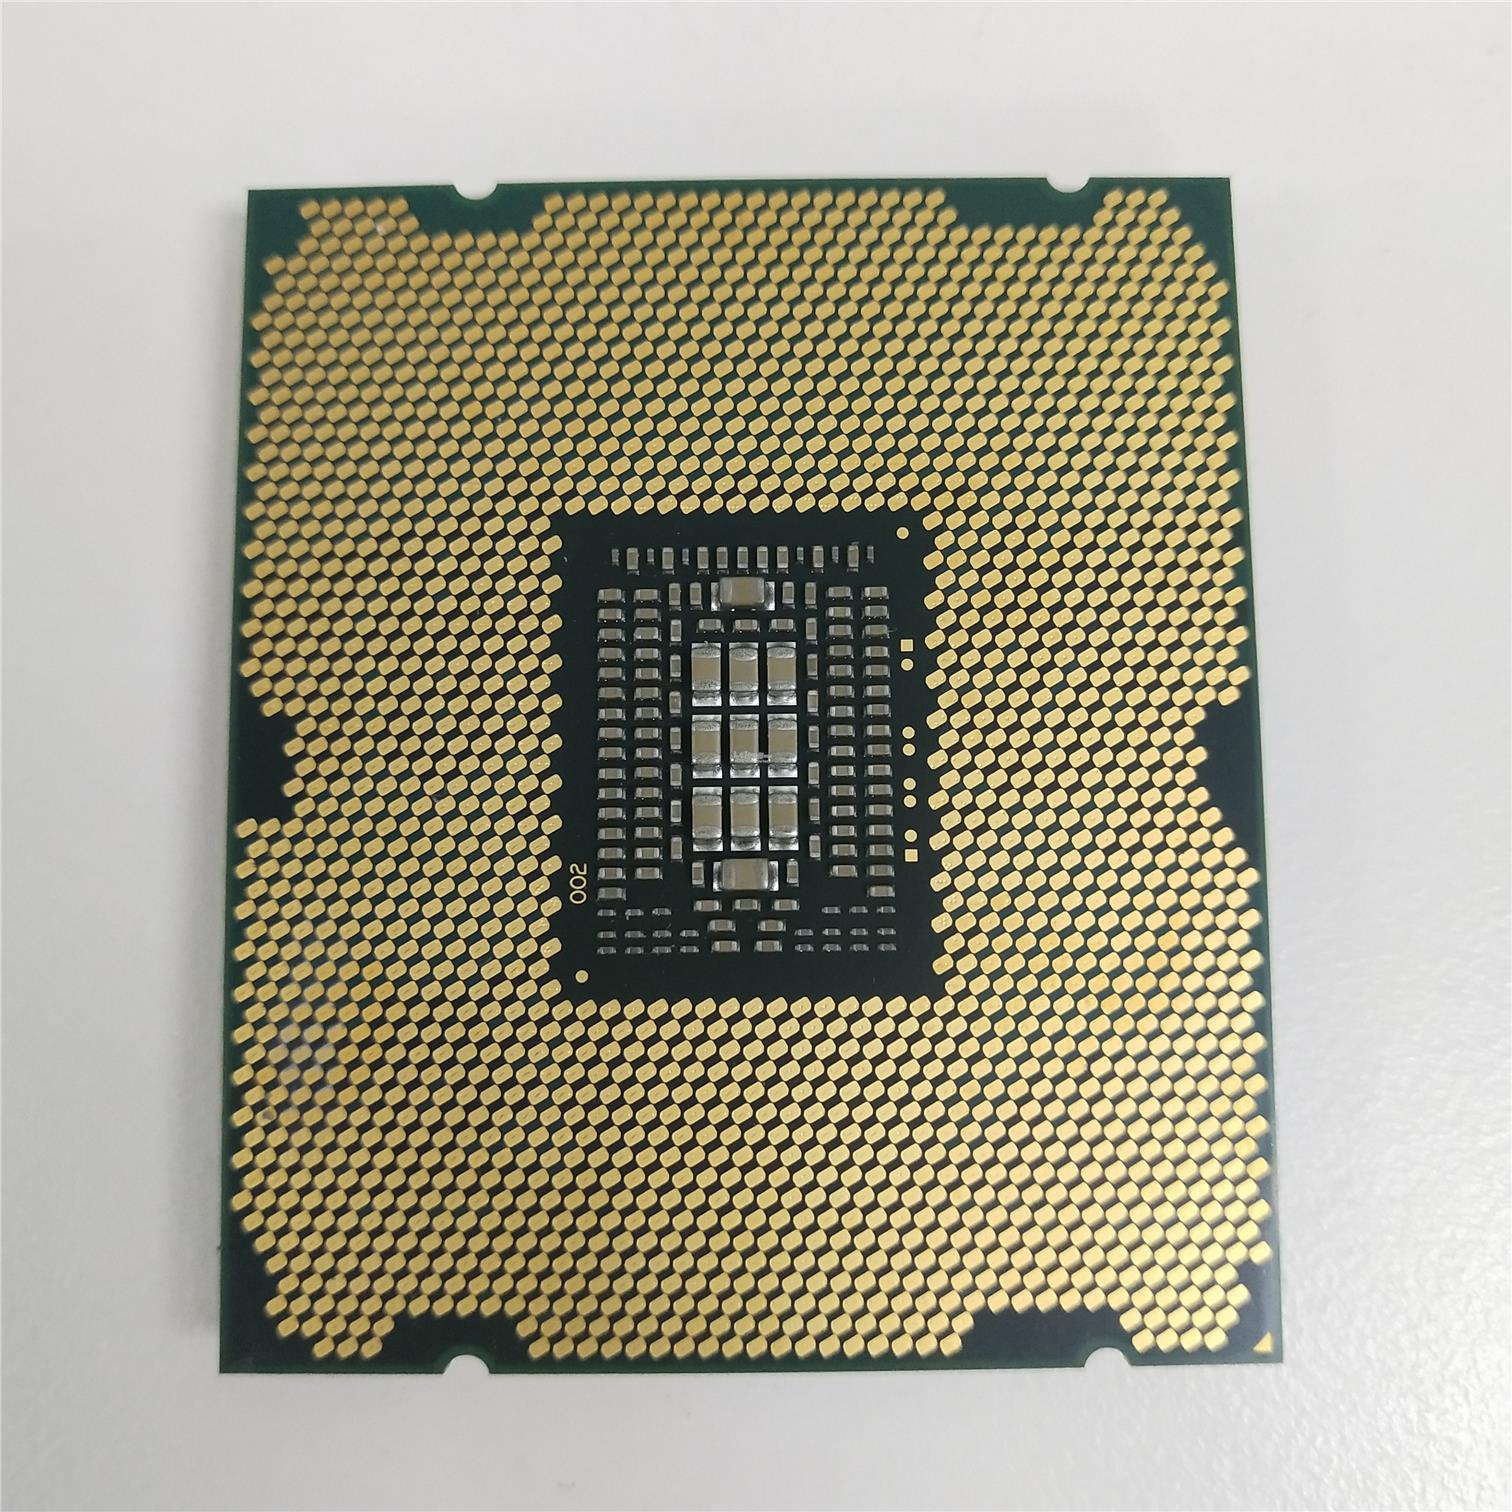 Intel Xeon Processor E5-2650 (20M Cache, 2.00 GHz,LGA2011) (SR0KQ)